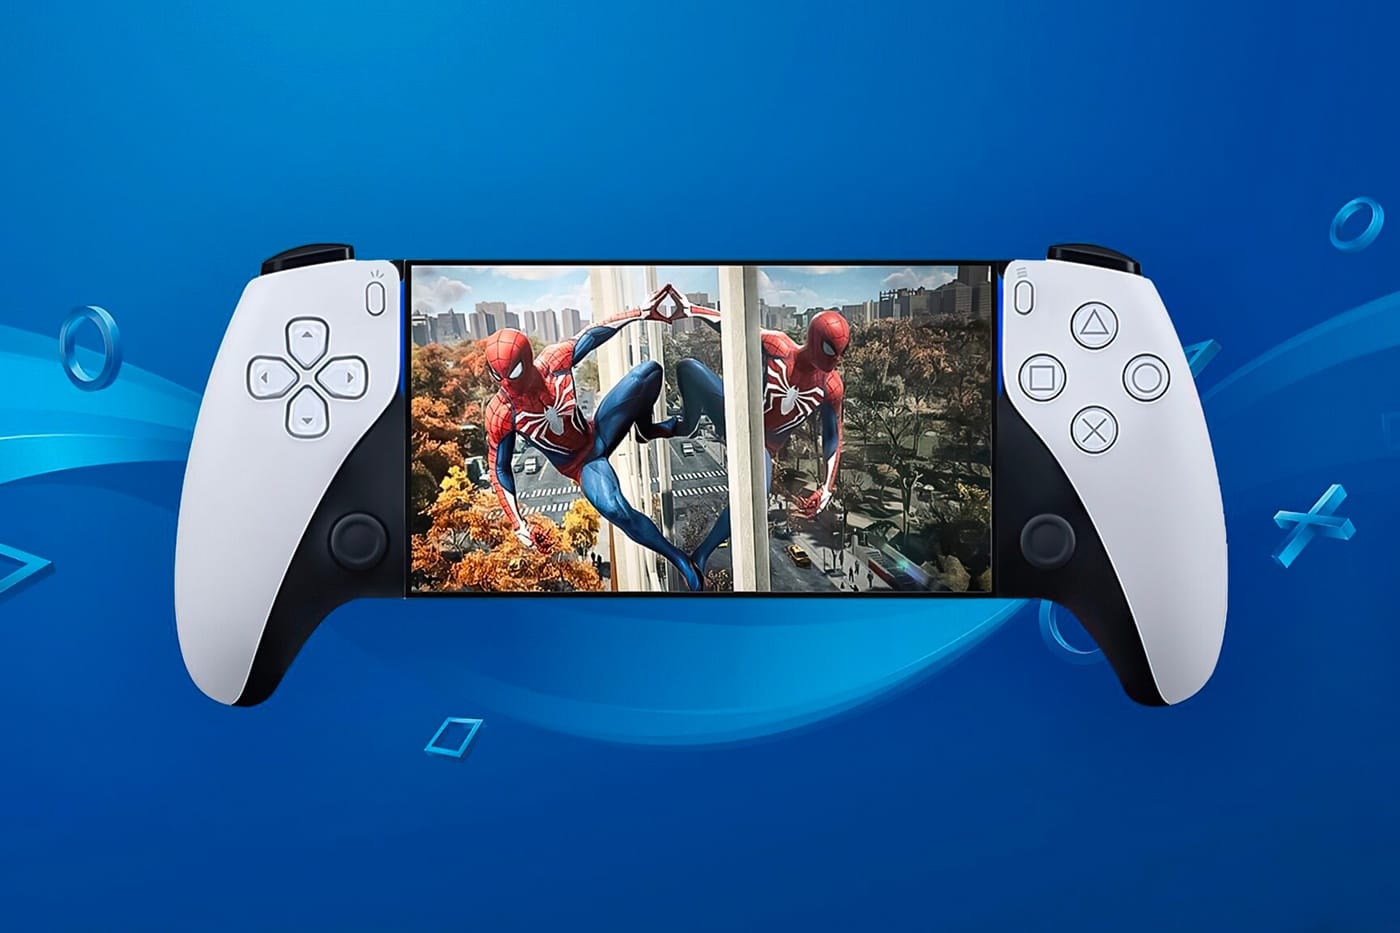 소니가 새로운 휴대용 게임기를 출시한다?, 플레이스테이션, PS5, 플레이스테이션 비타, 닌텐도 스위치